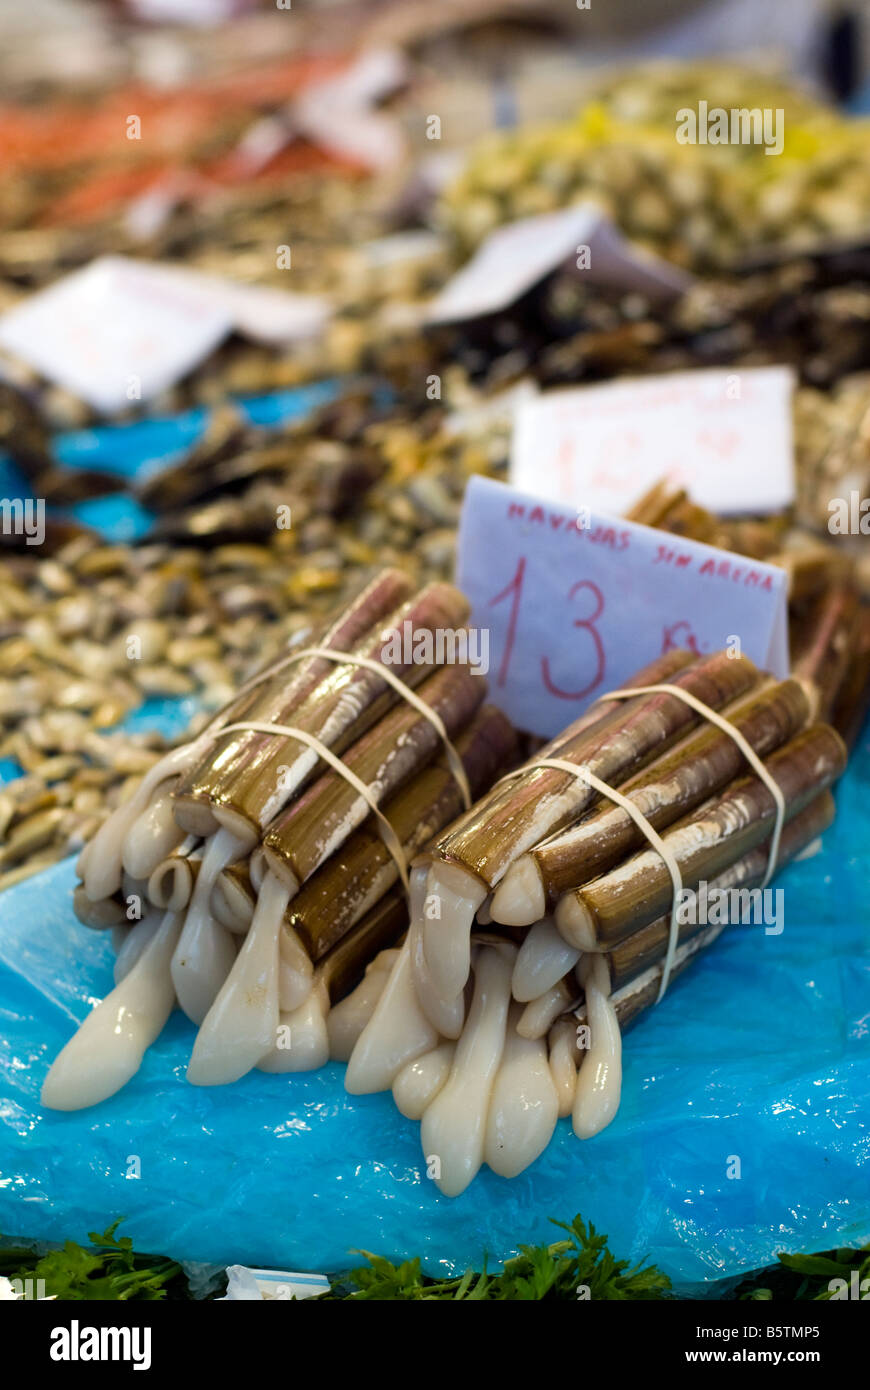 Shell rasoir Navajas à vendre dans le marché central des poissons Mercado Central dans le centre-ville historique de Valence Espagne Banque D'Images